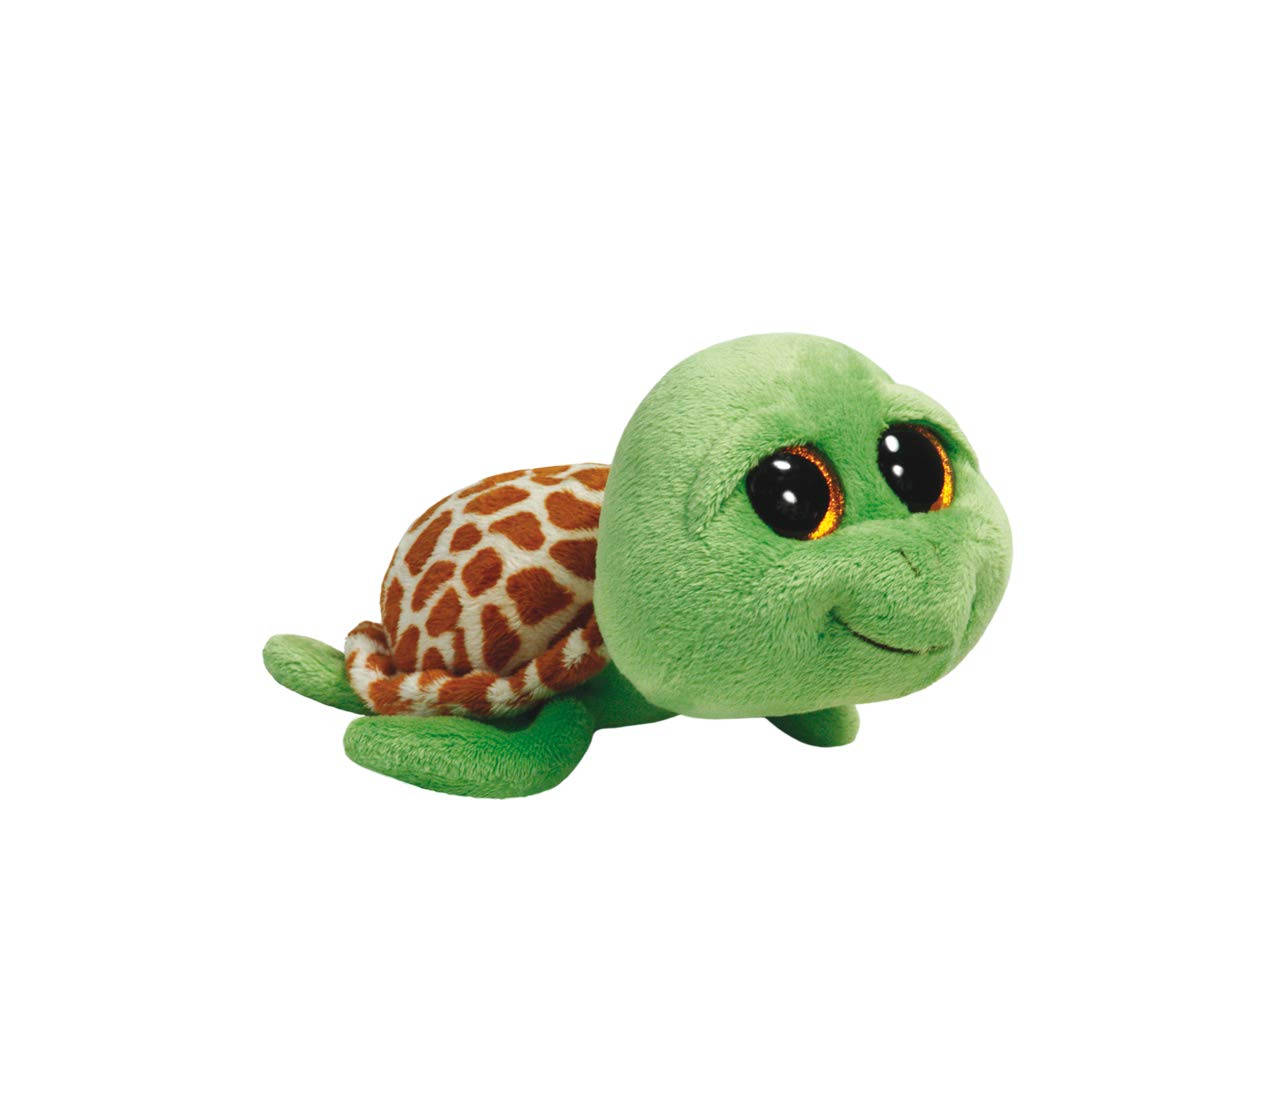 Cute Green Turtle Beanie Boos